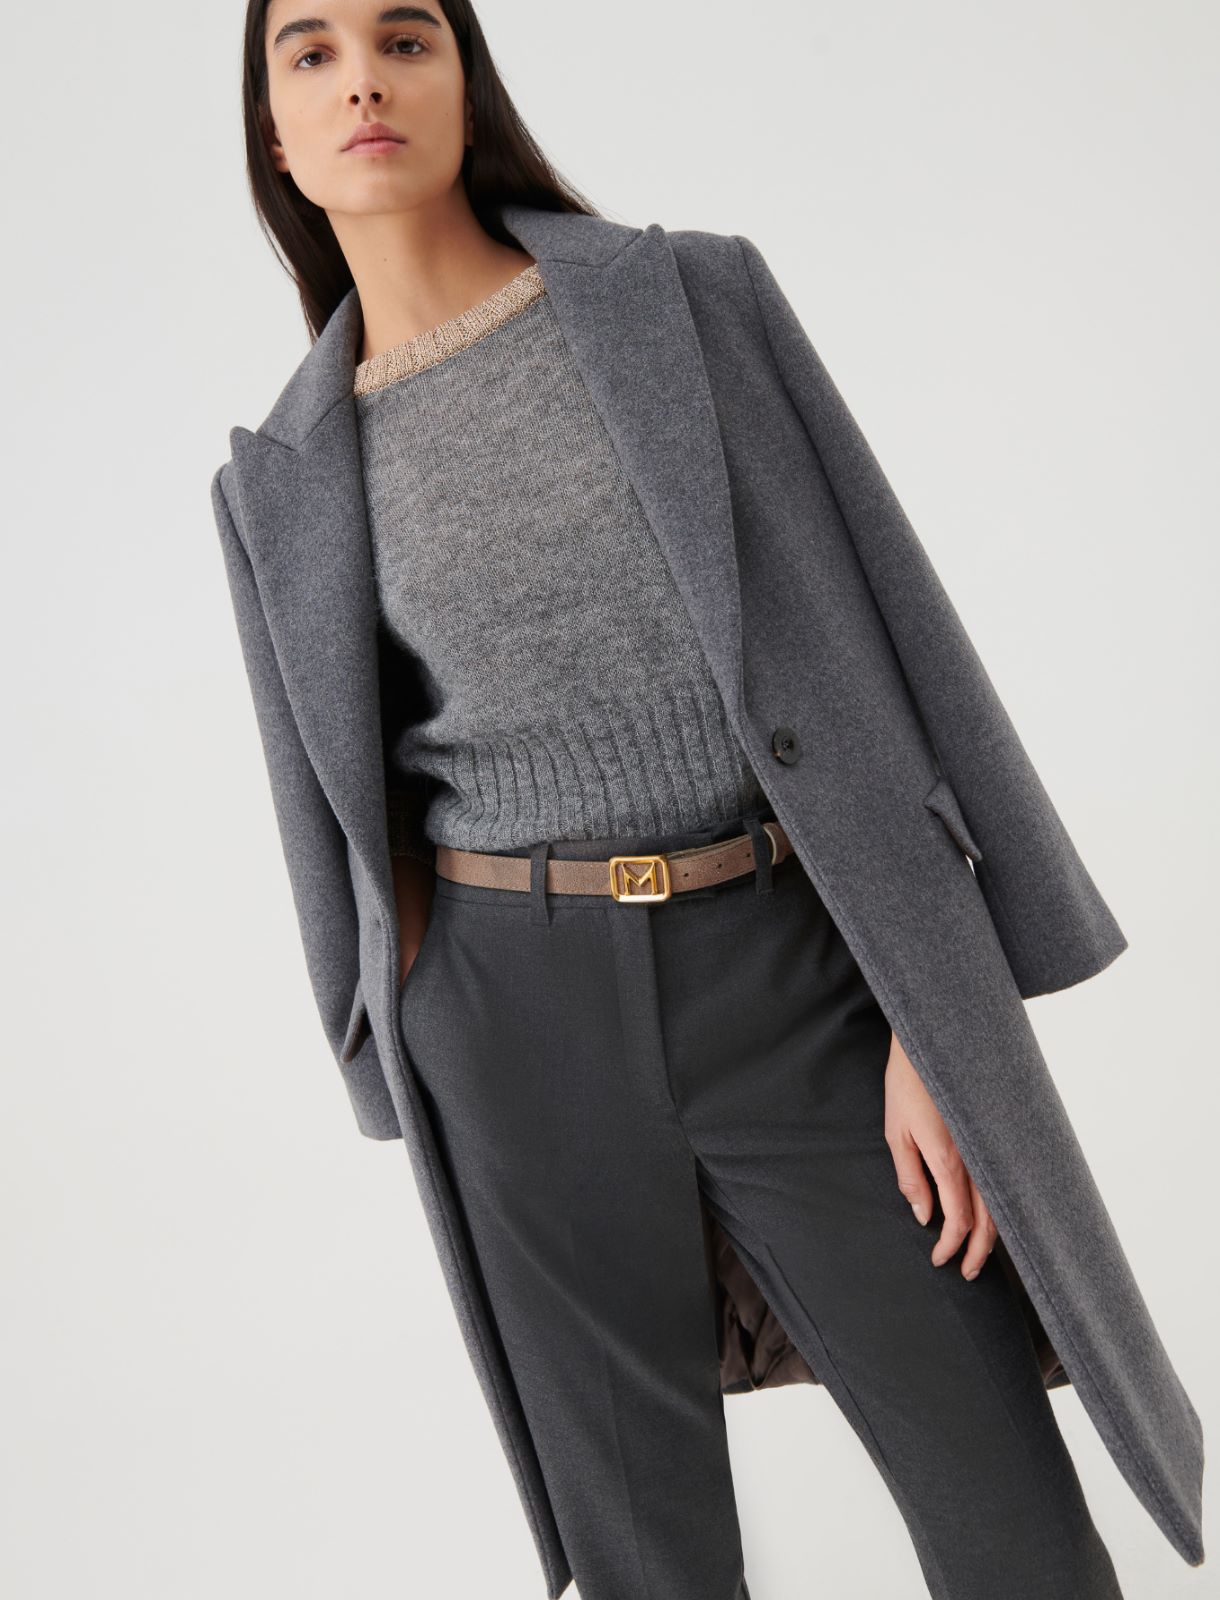 Cloth coat - Melange grey - Marella - 3